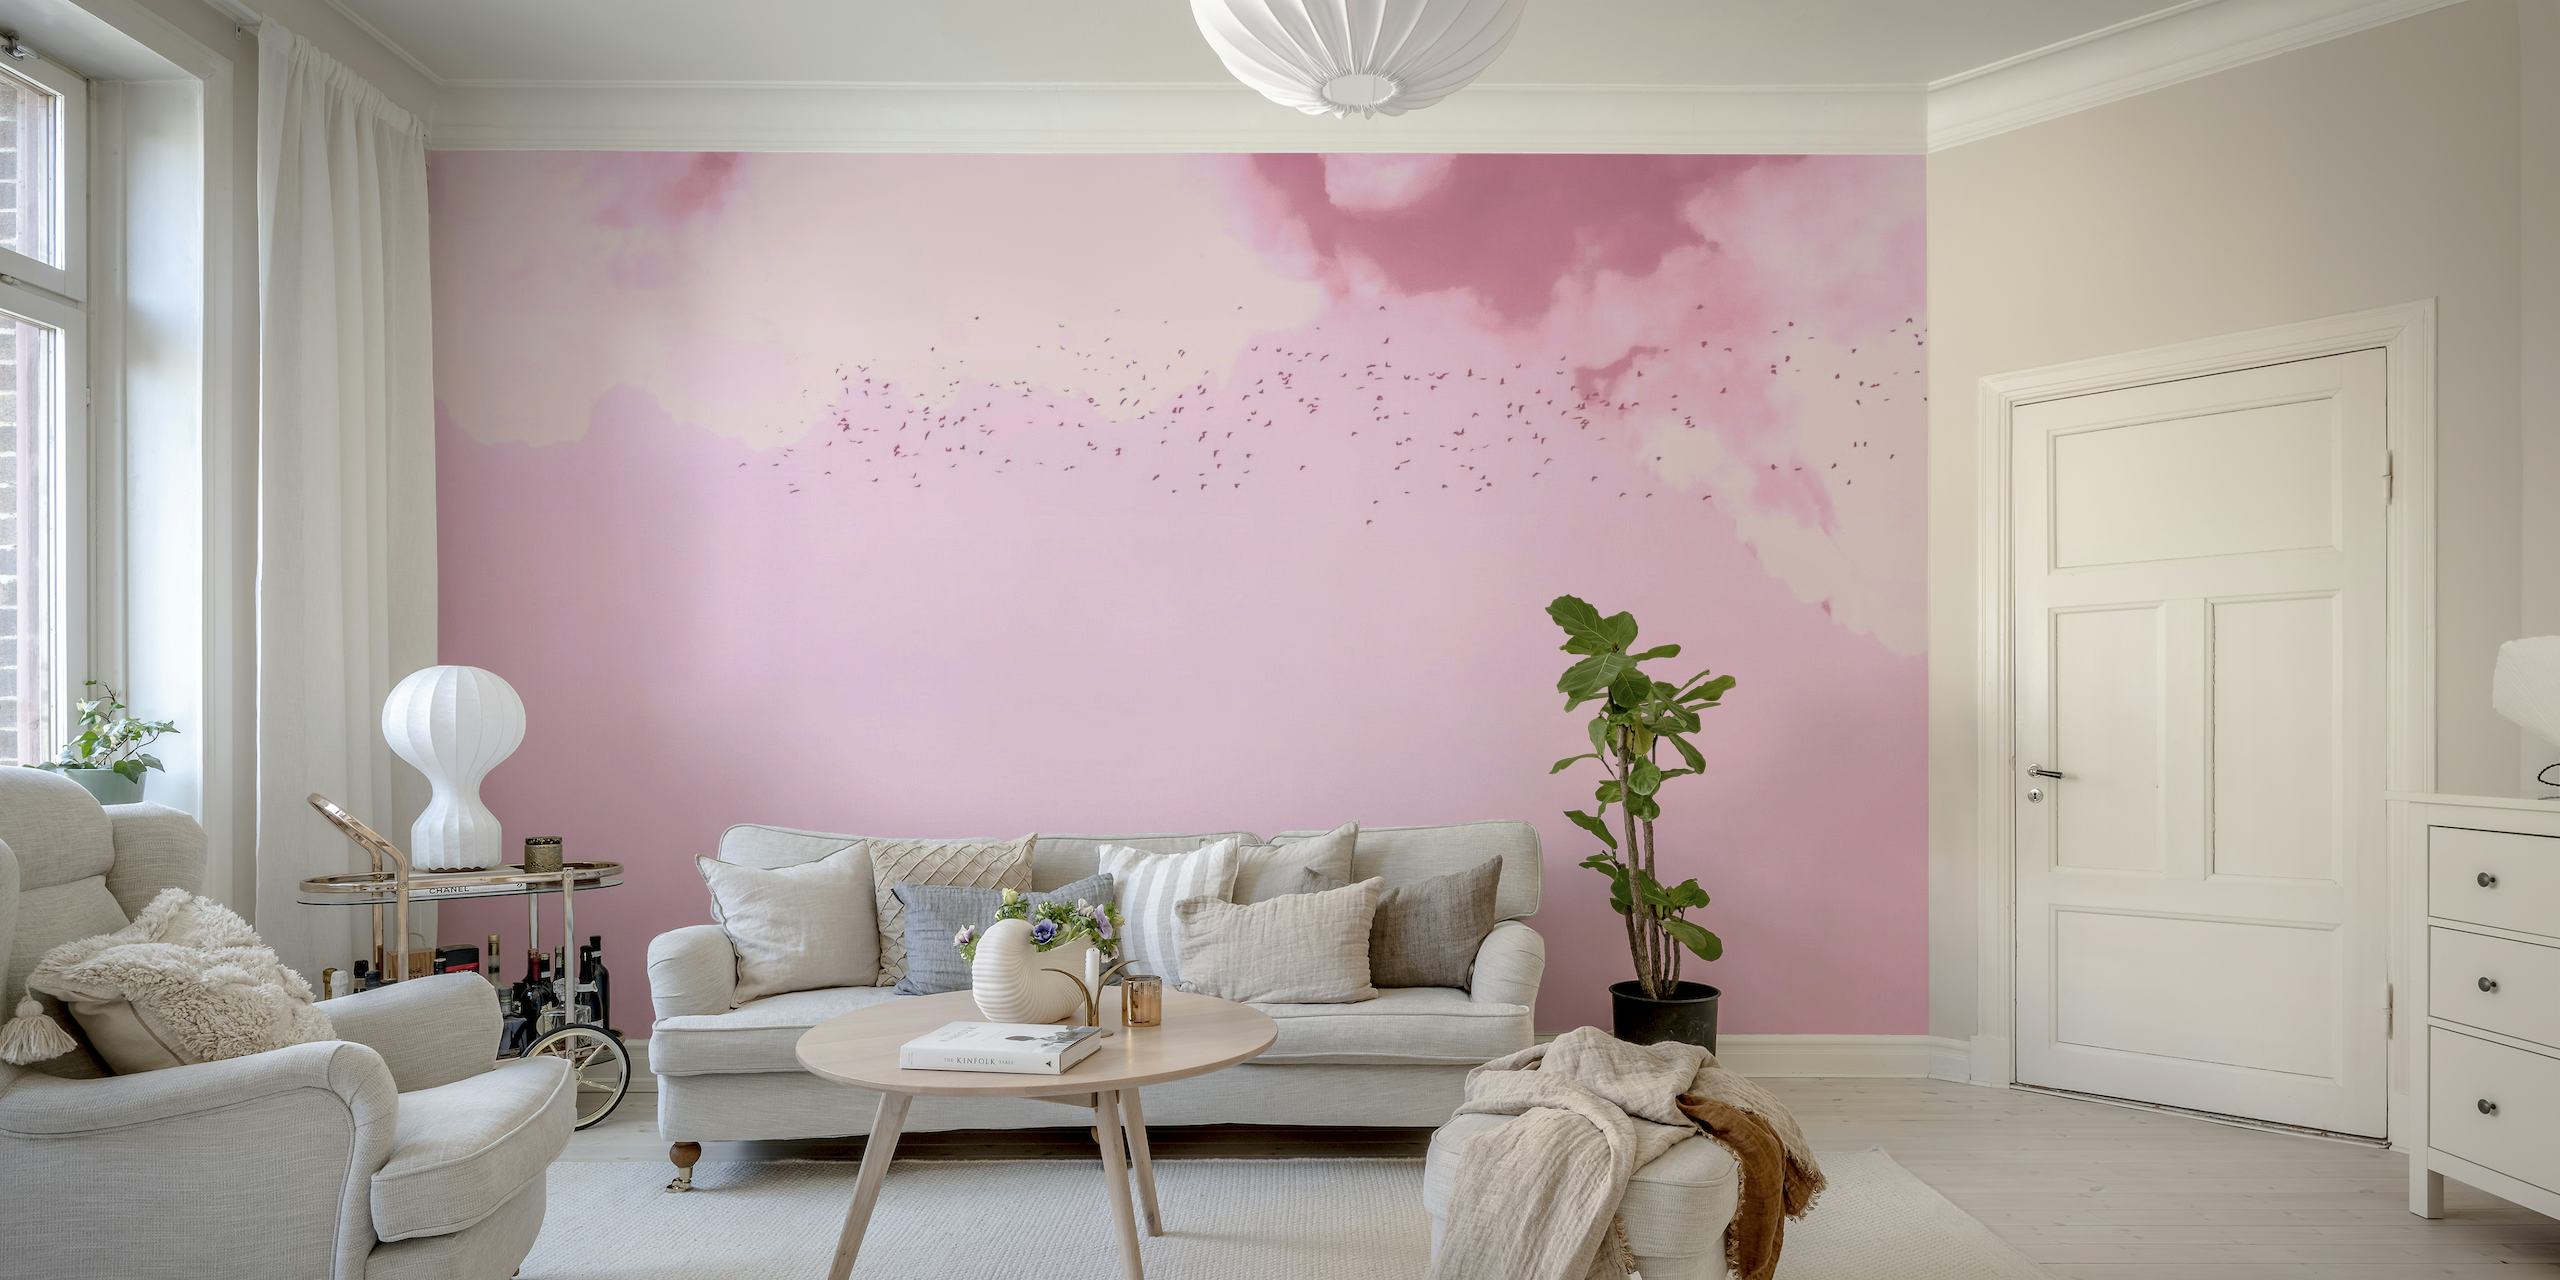 En drömsk tapet i rosa och magenta som föreställer fåglar som flyger bland mjuka moln